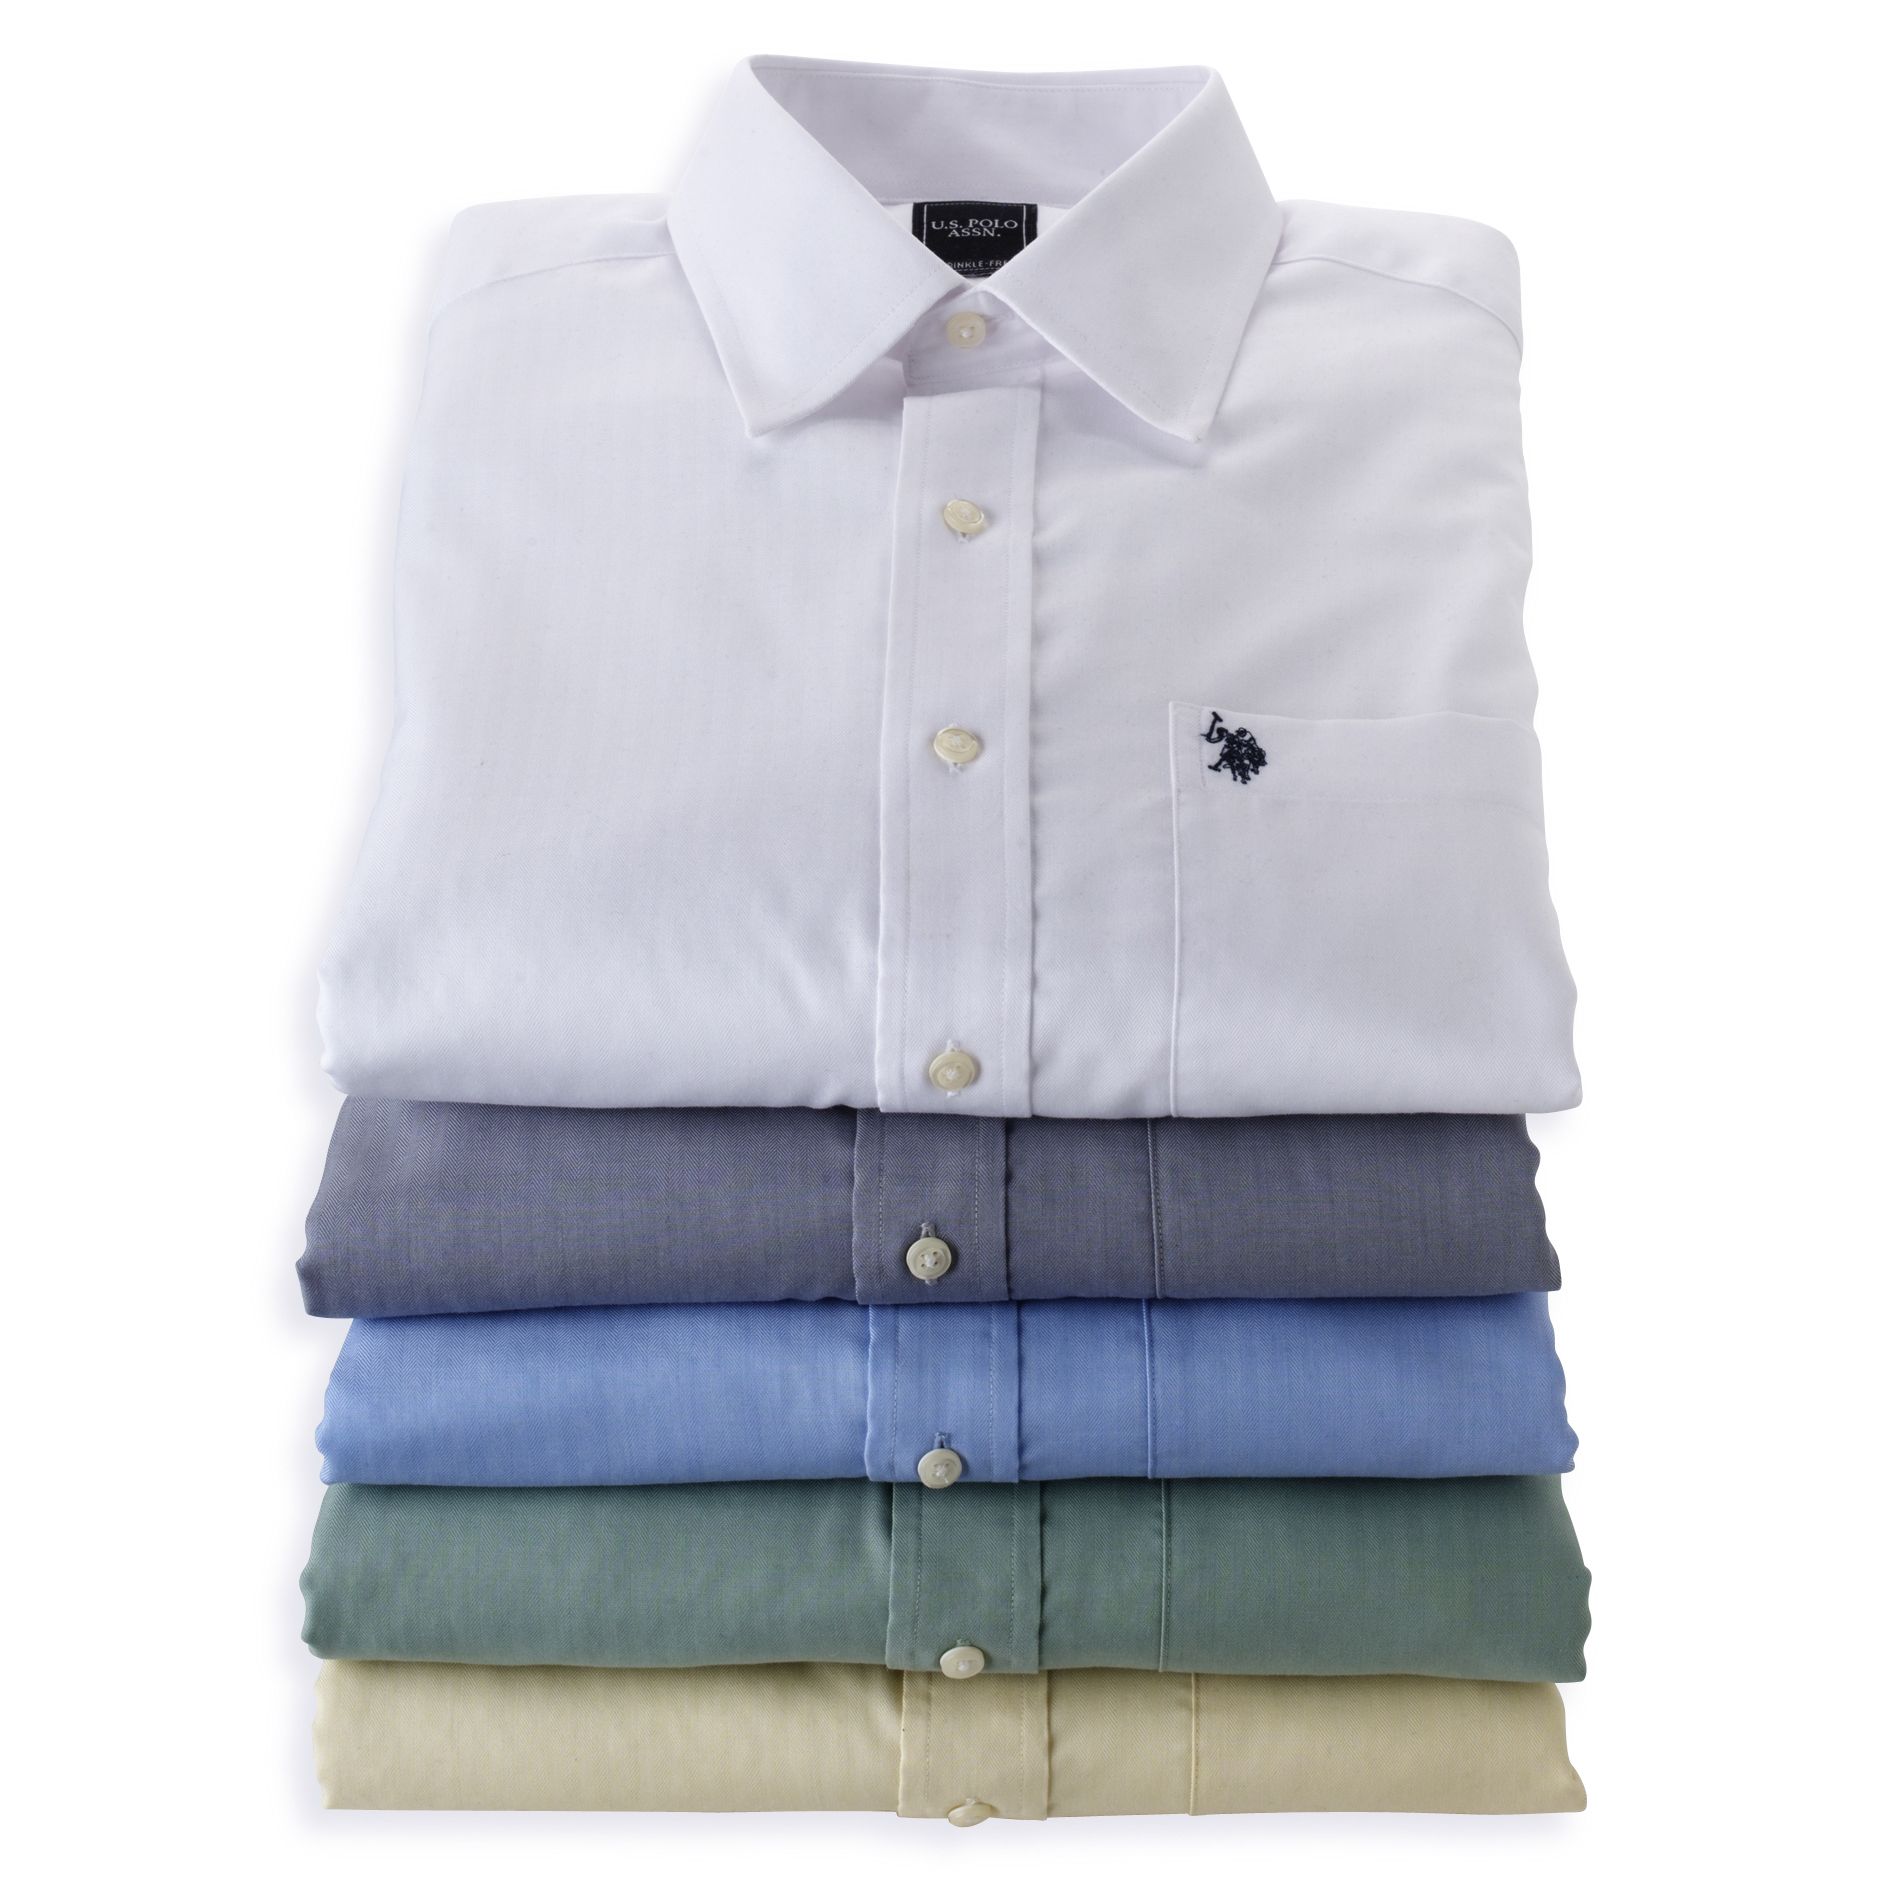 U.S. Polo Assn. Men's Long Sleeve Dress Shirt